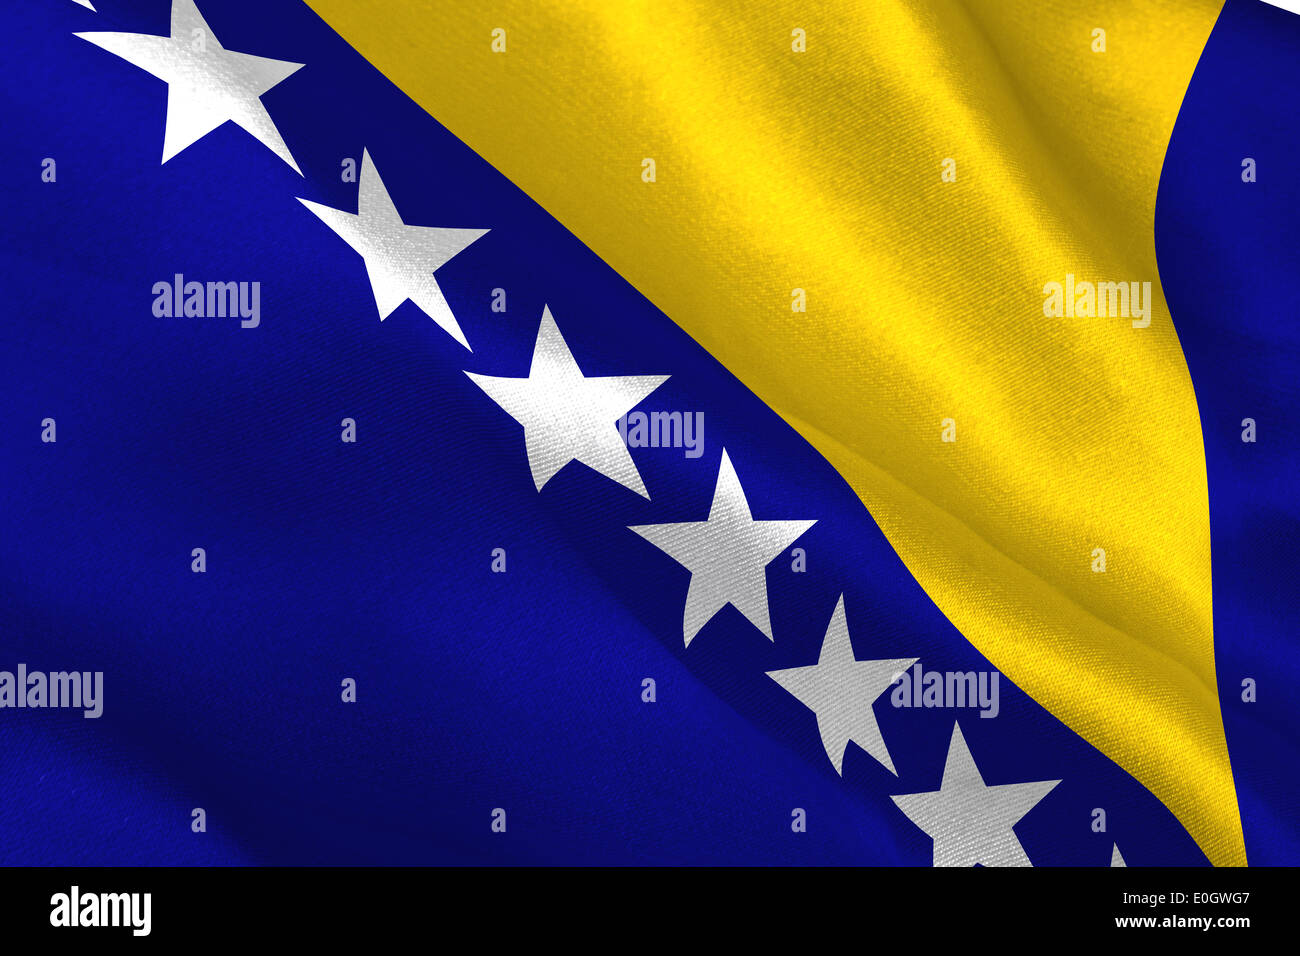 Bosnia herzegovina national flag Stock Photo